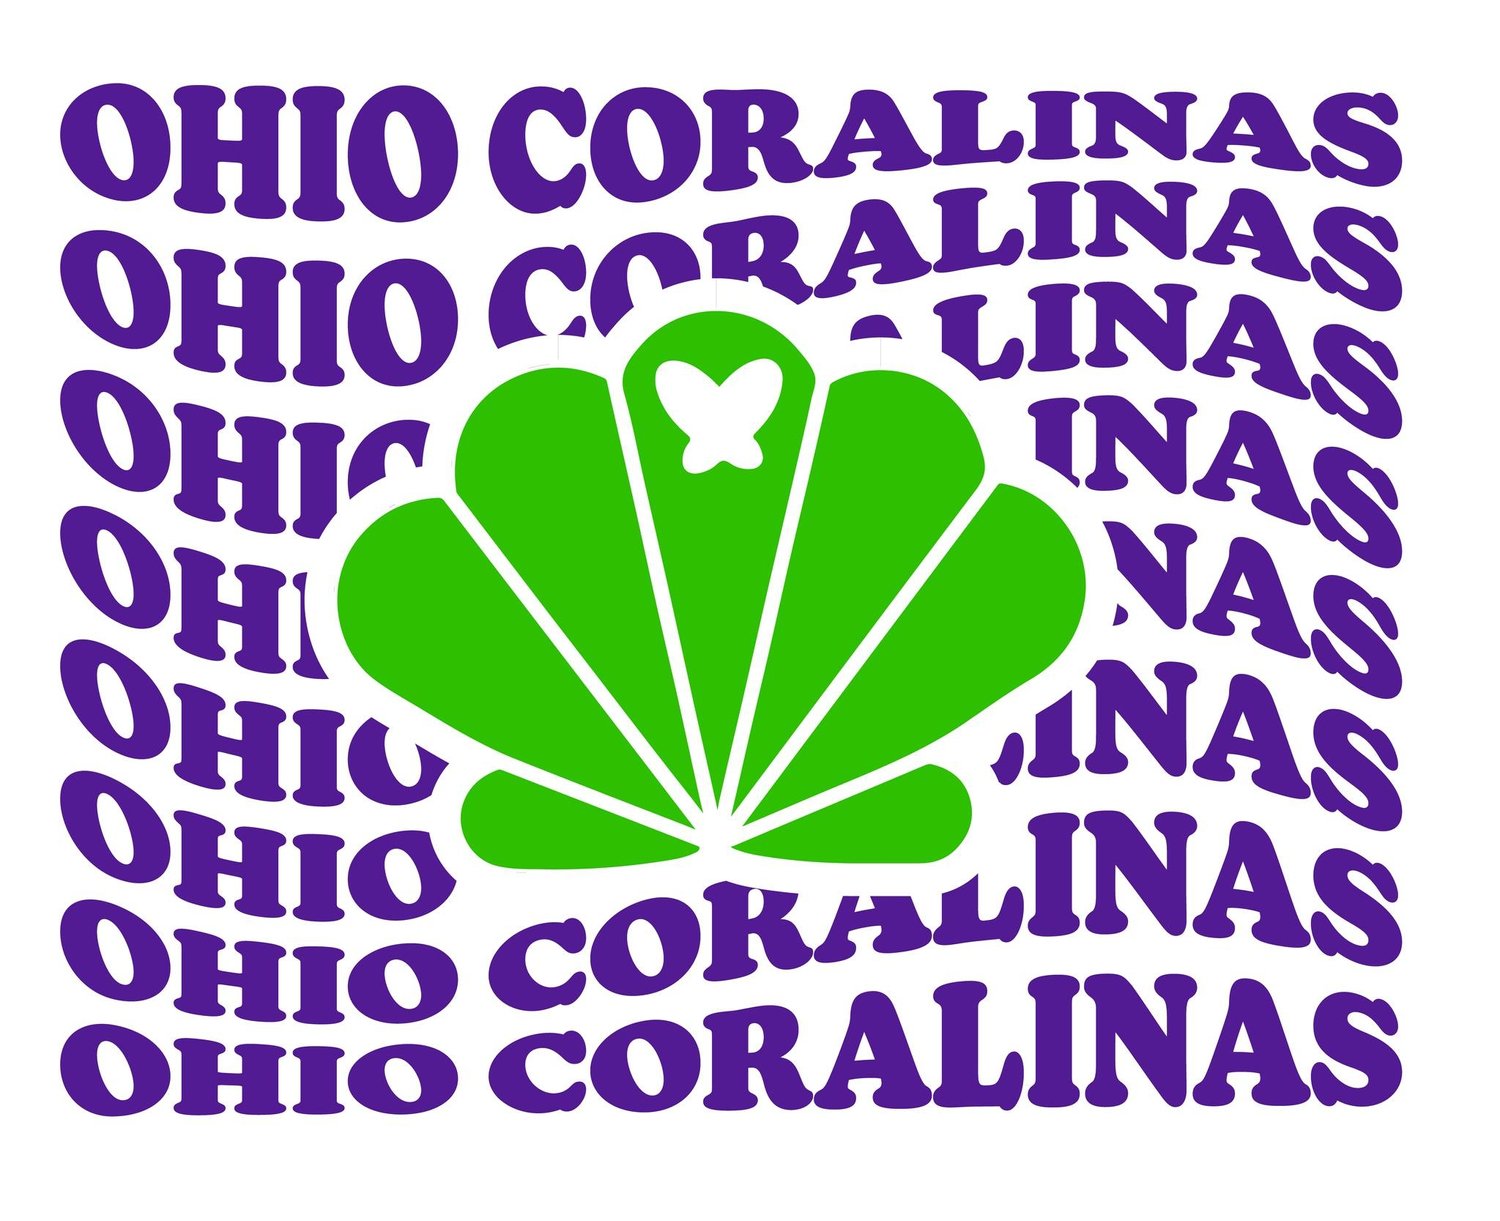 Ohio Coralinas Synchro 